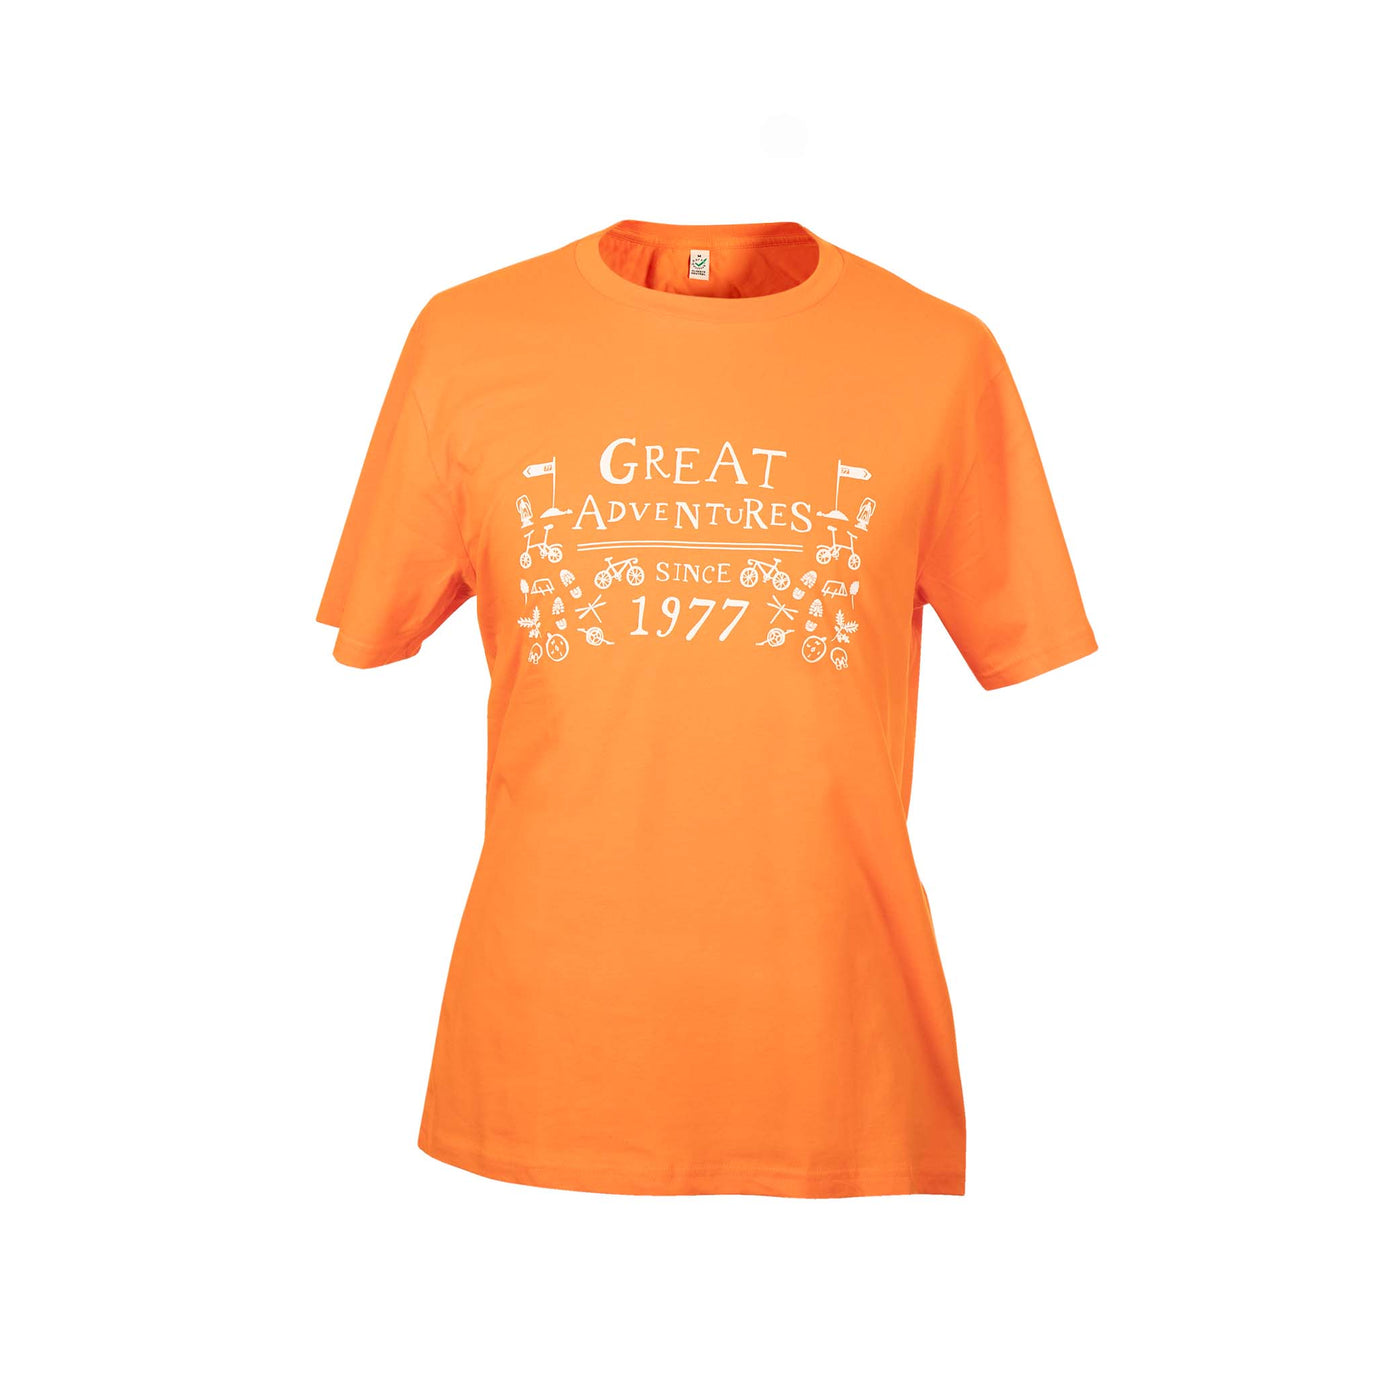 Men's Great Adventures T-shirt